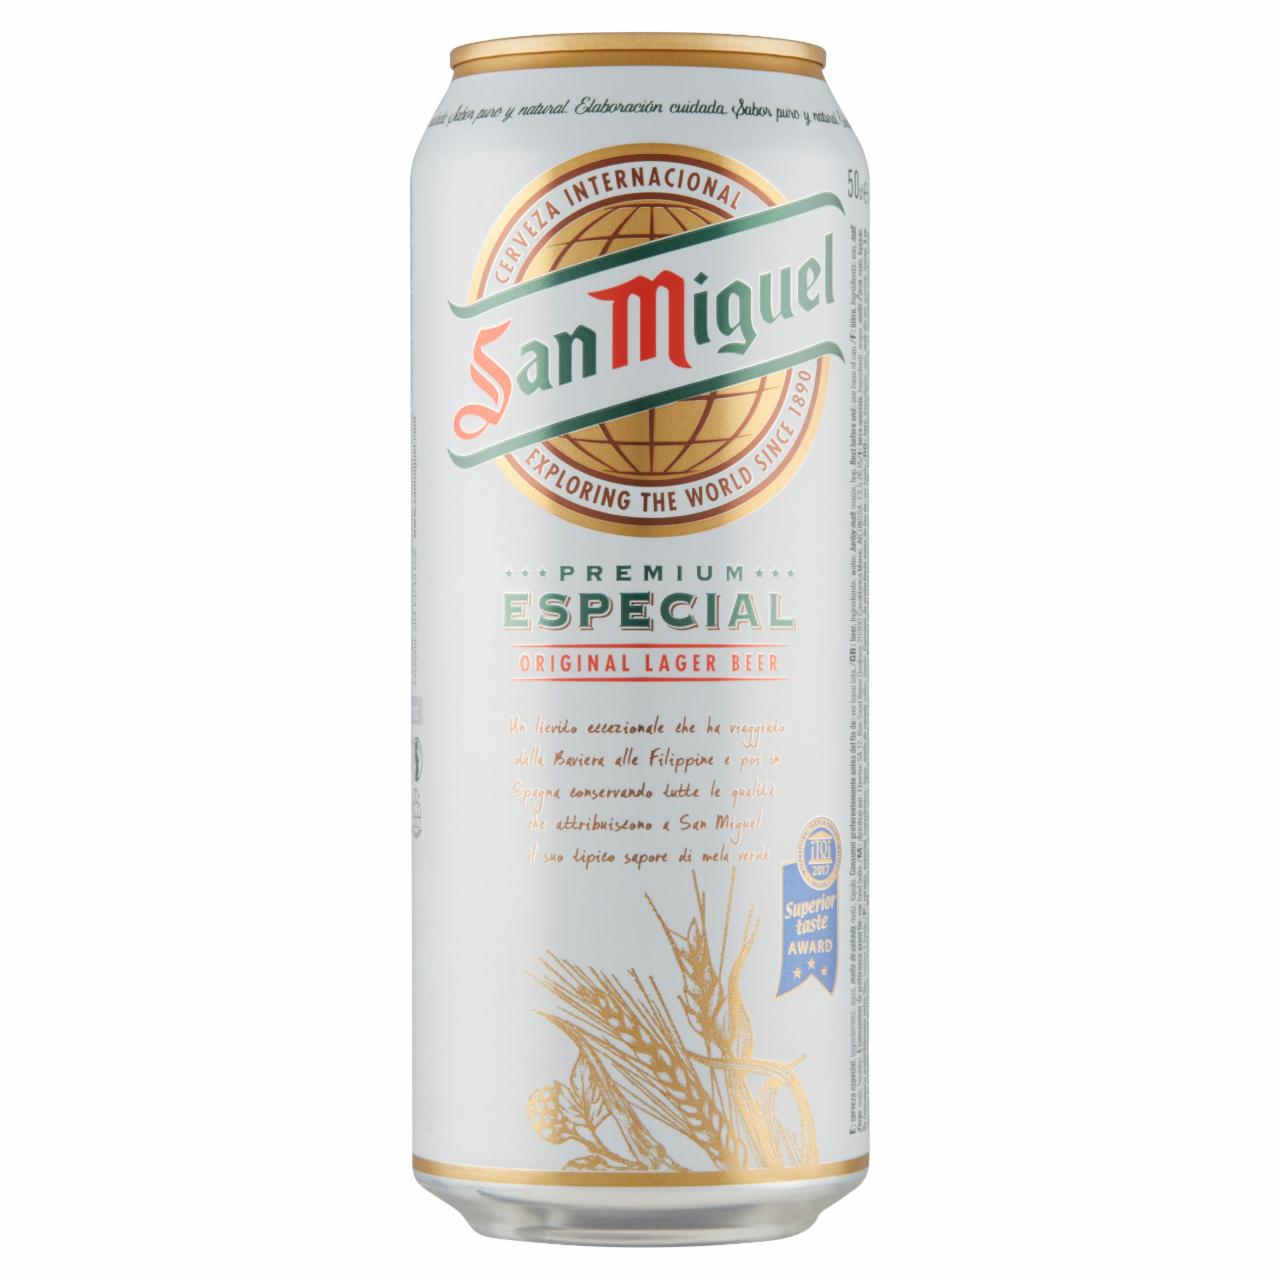 Képek - San Miguel prémium világos sör 5,4% 0,5 l